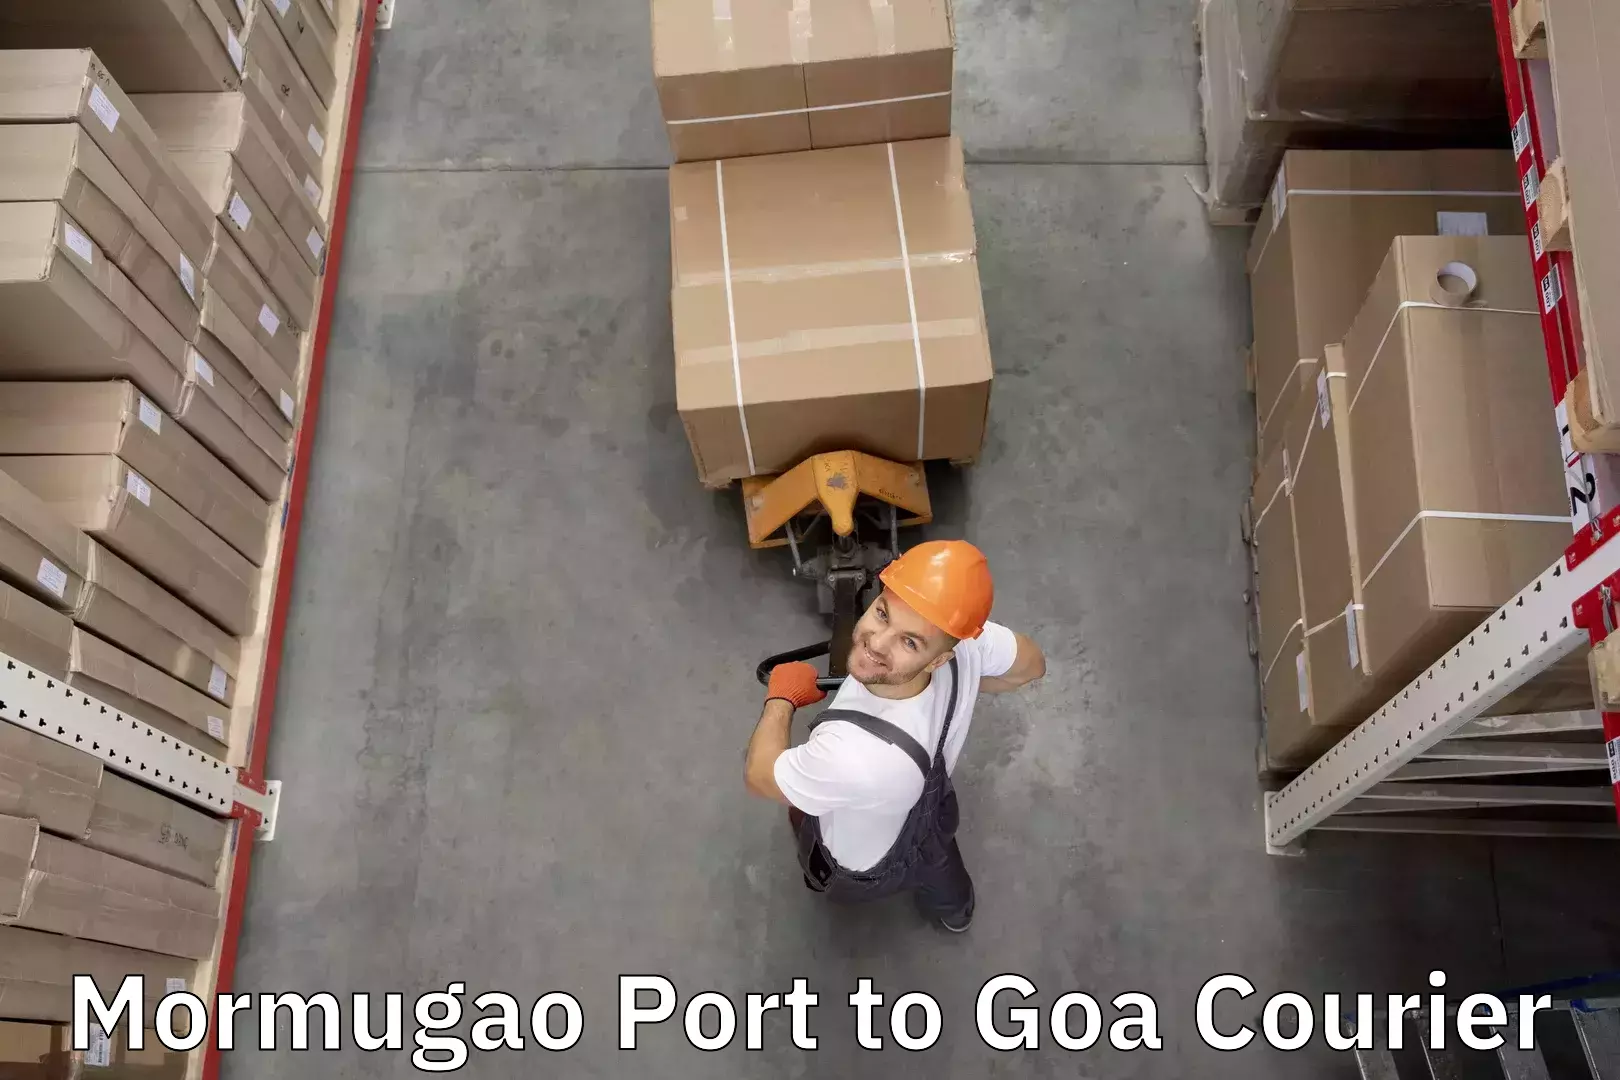 Luggage transport consulting Mormugao Port to Mormugao Port